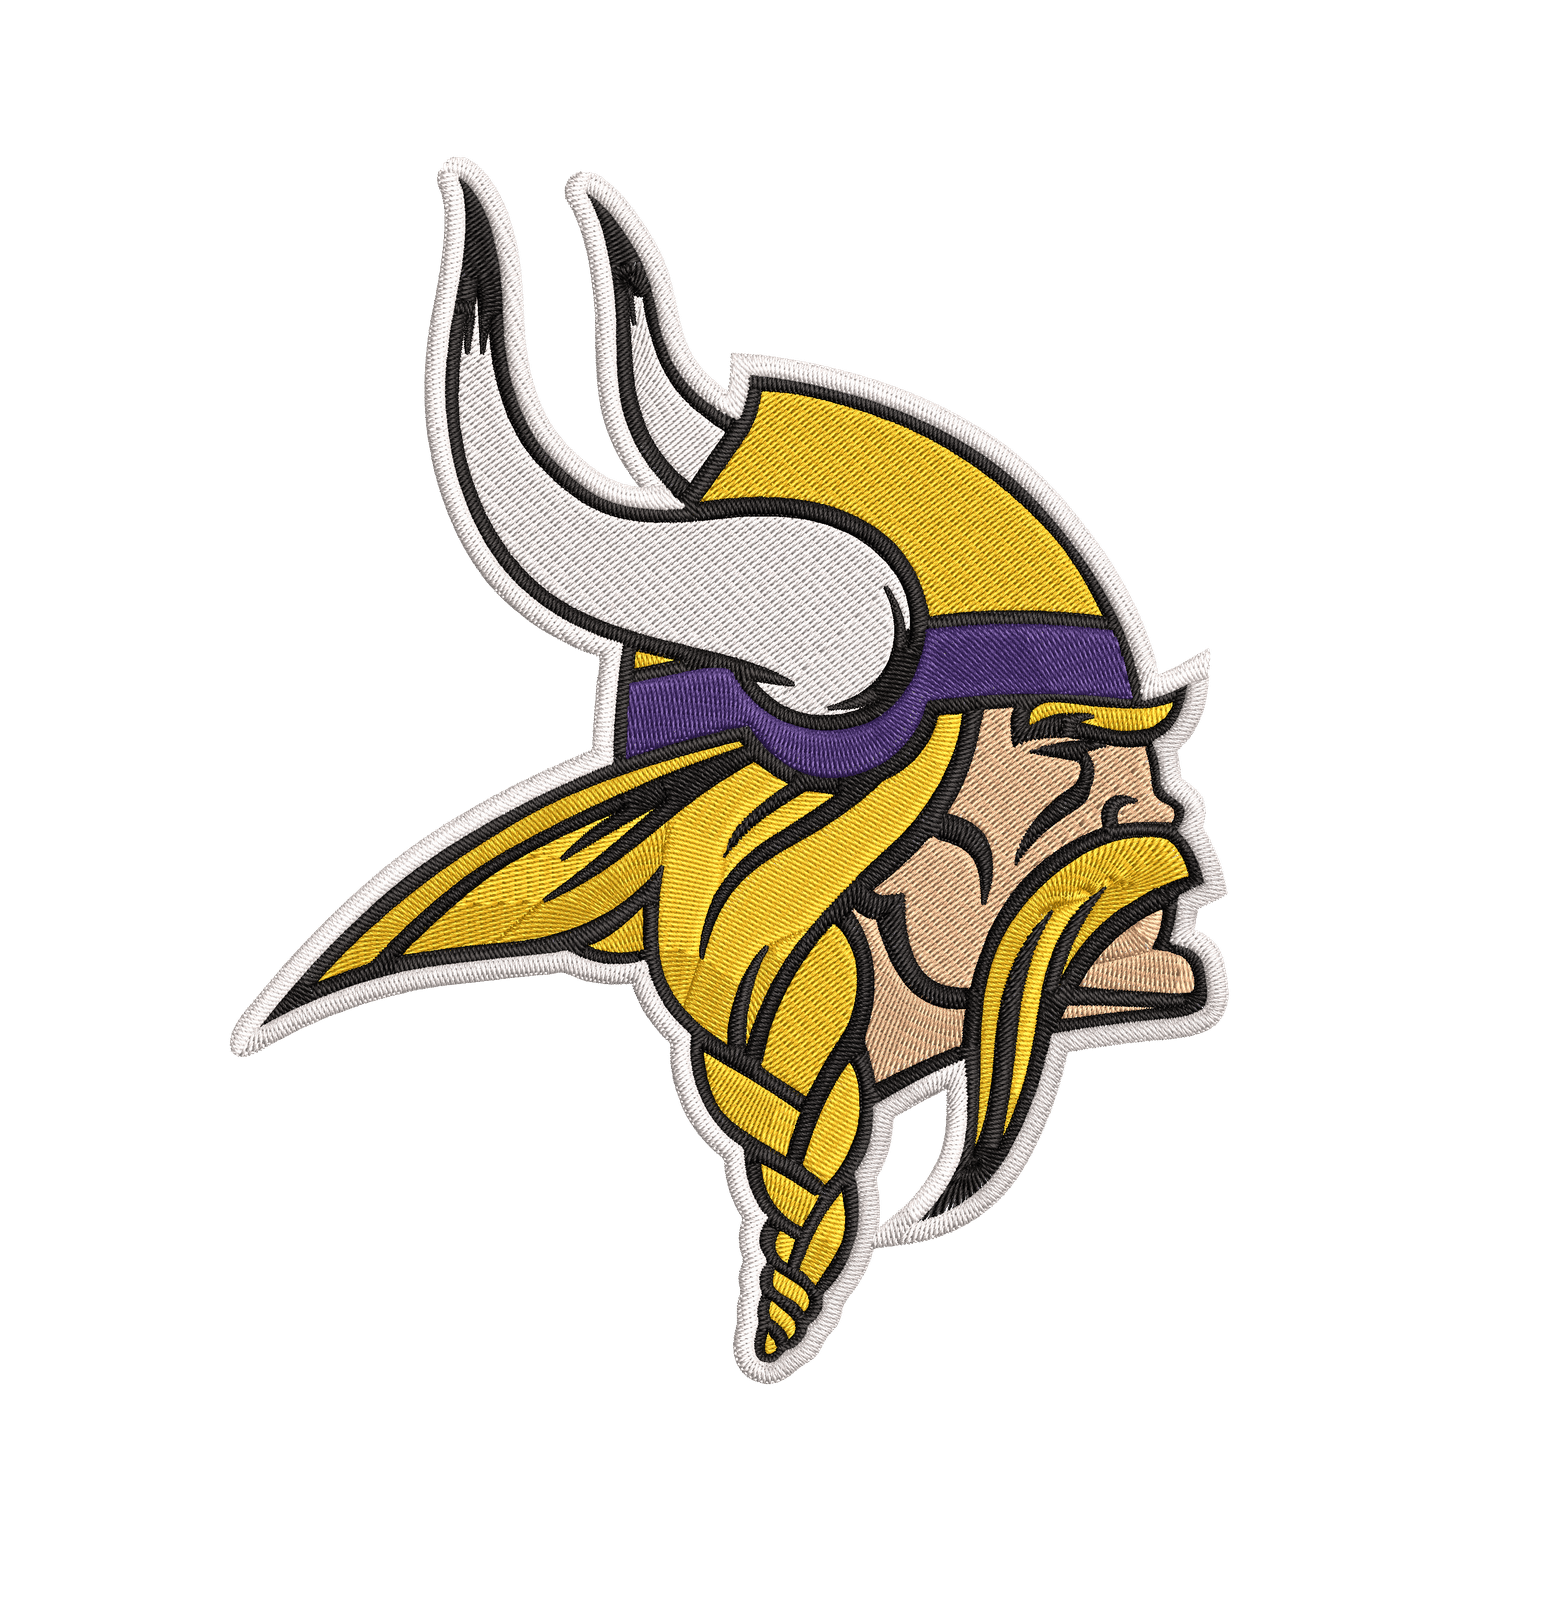 Minnesota Vikings 1 : Embroidery Design